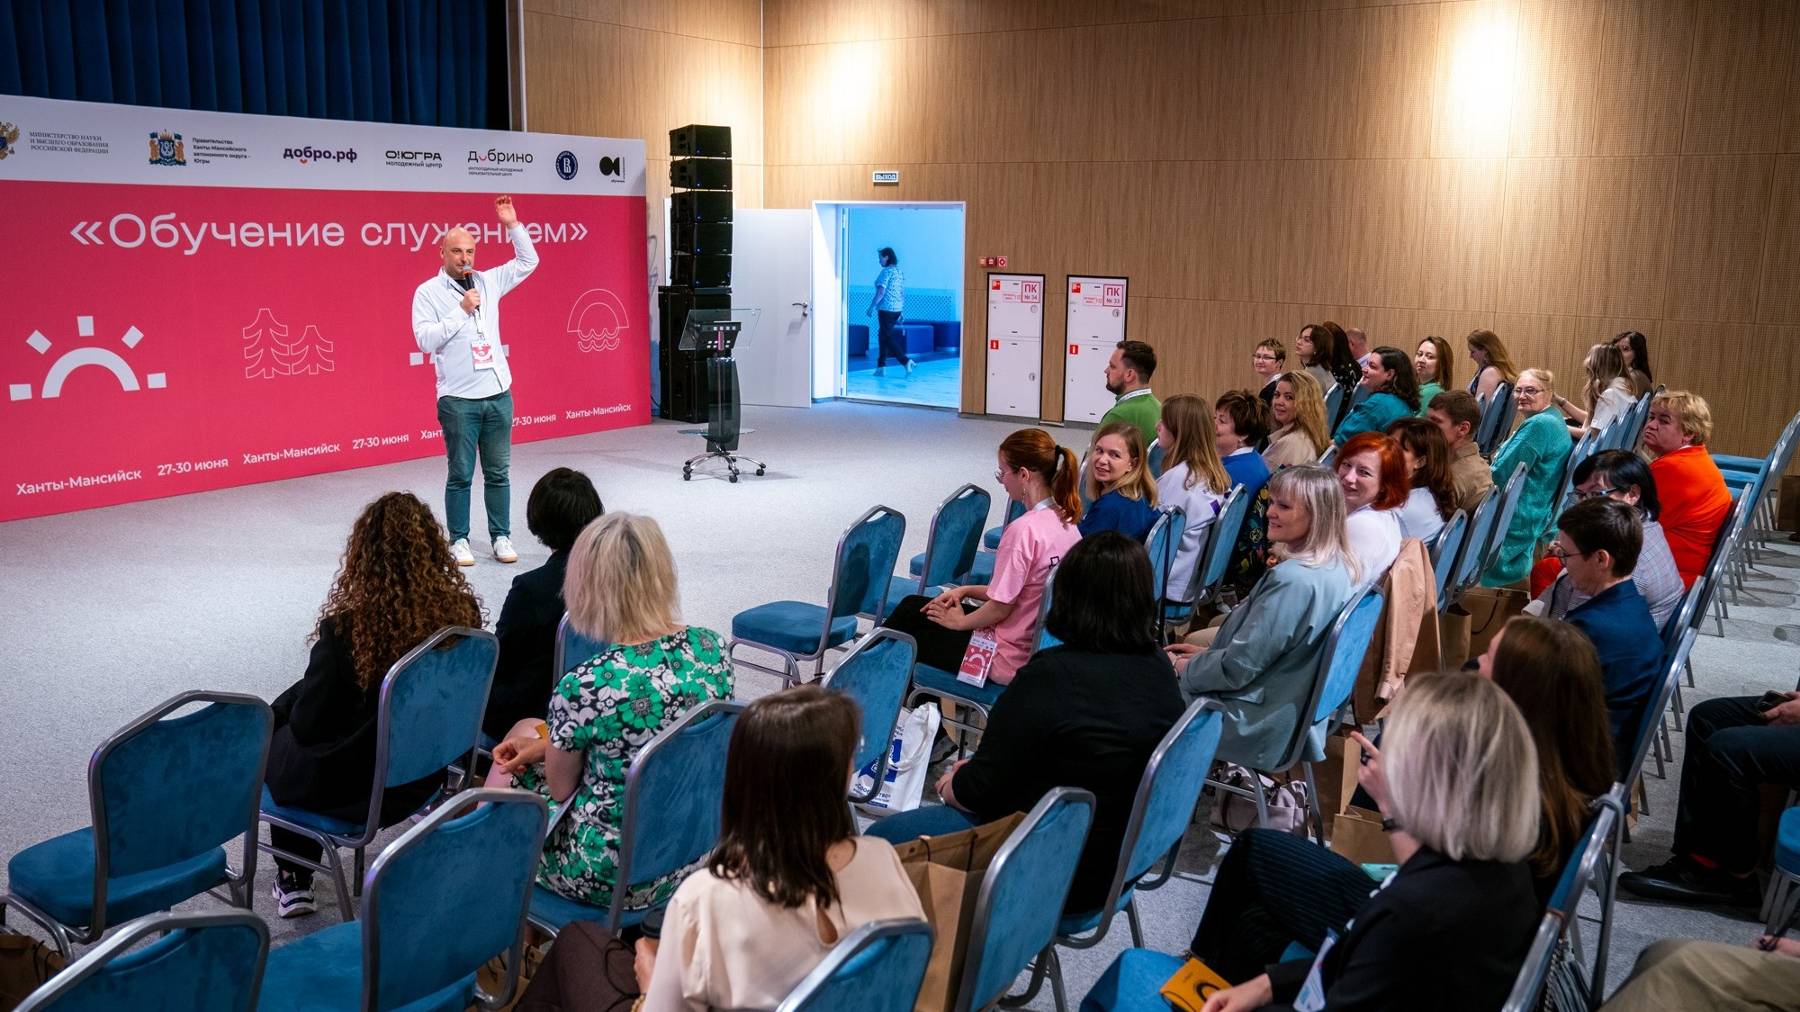 В Ханты-Мансийске стартовал Форум социальных партнёров программы «Обучение служением»